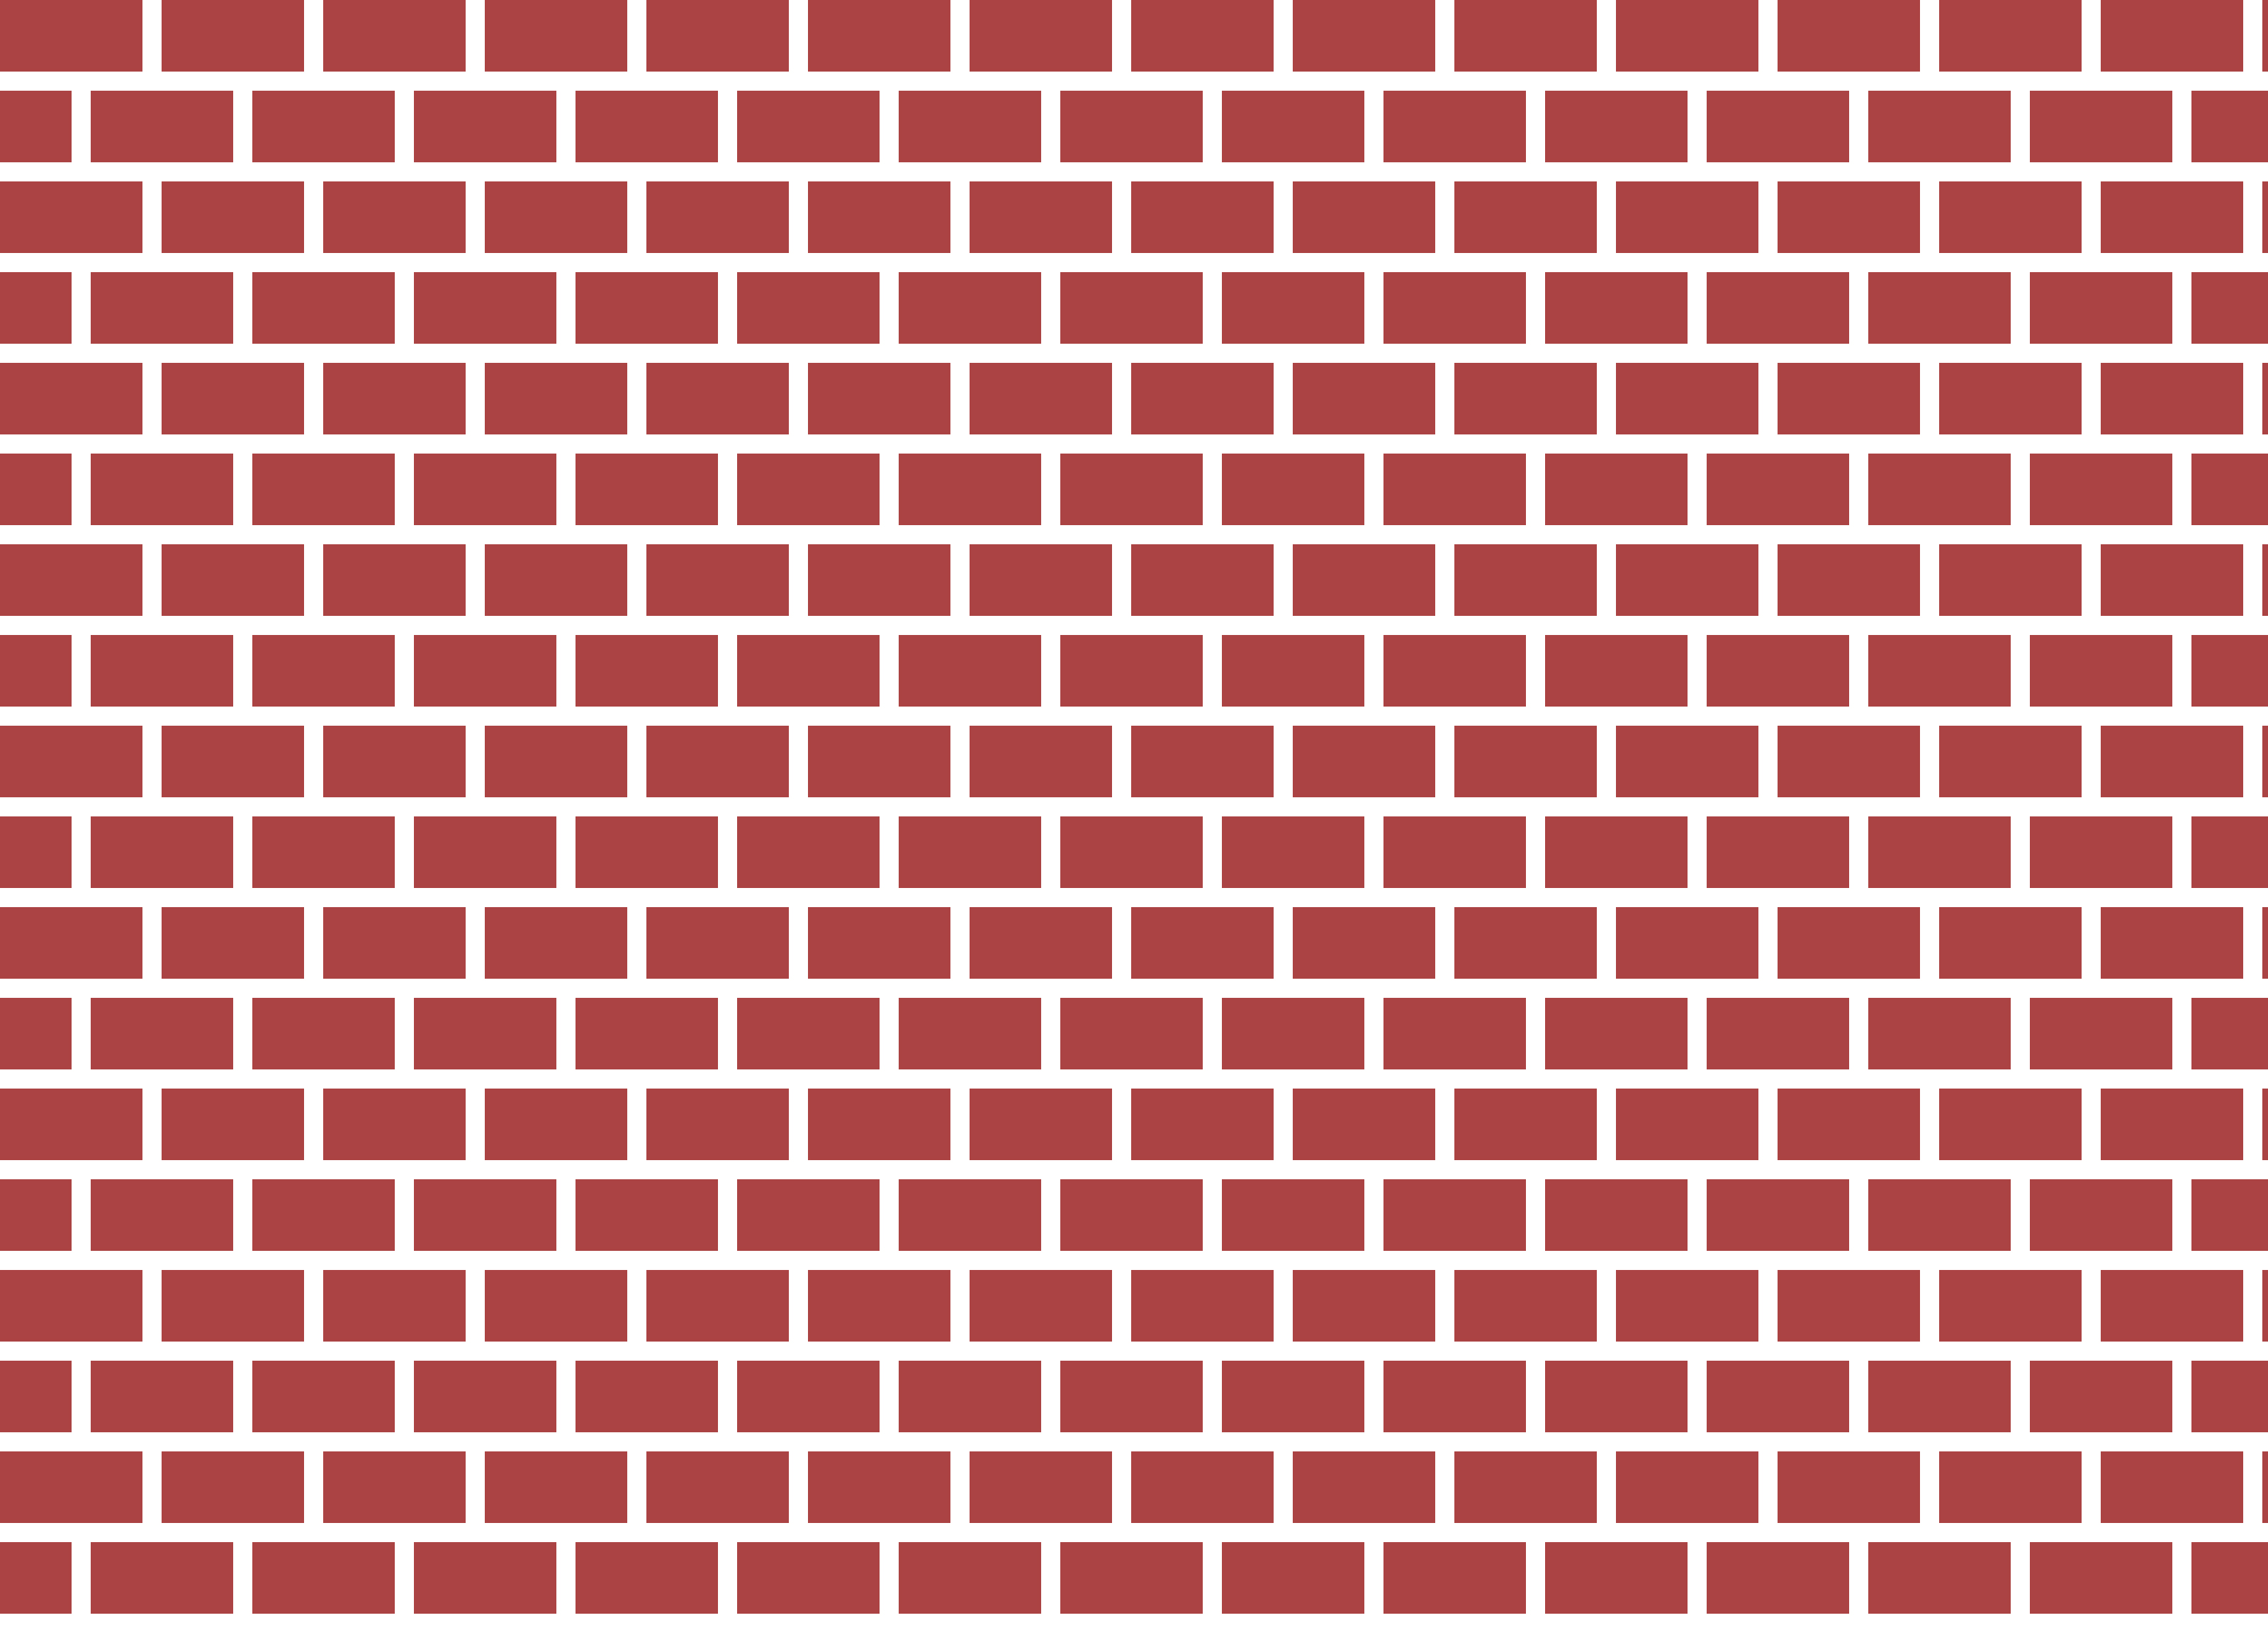 Brick Wall   Free Images At Clker Com   Vector Clip Art Online